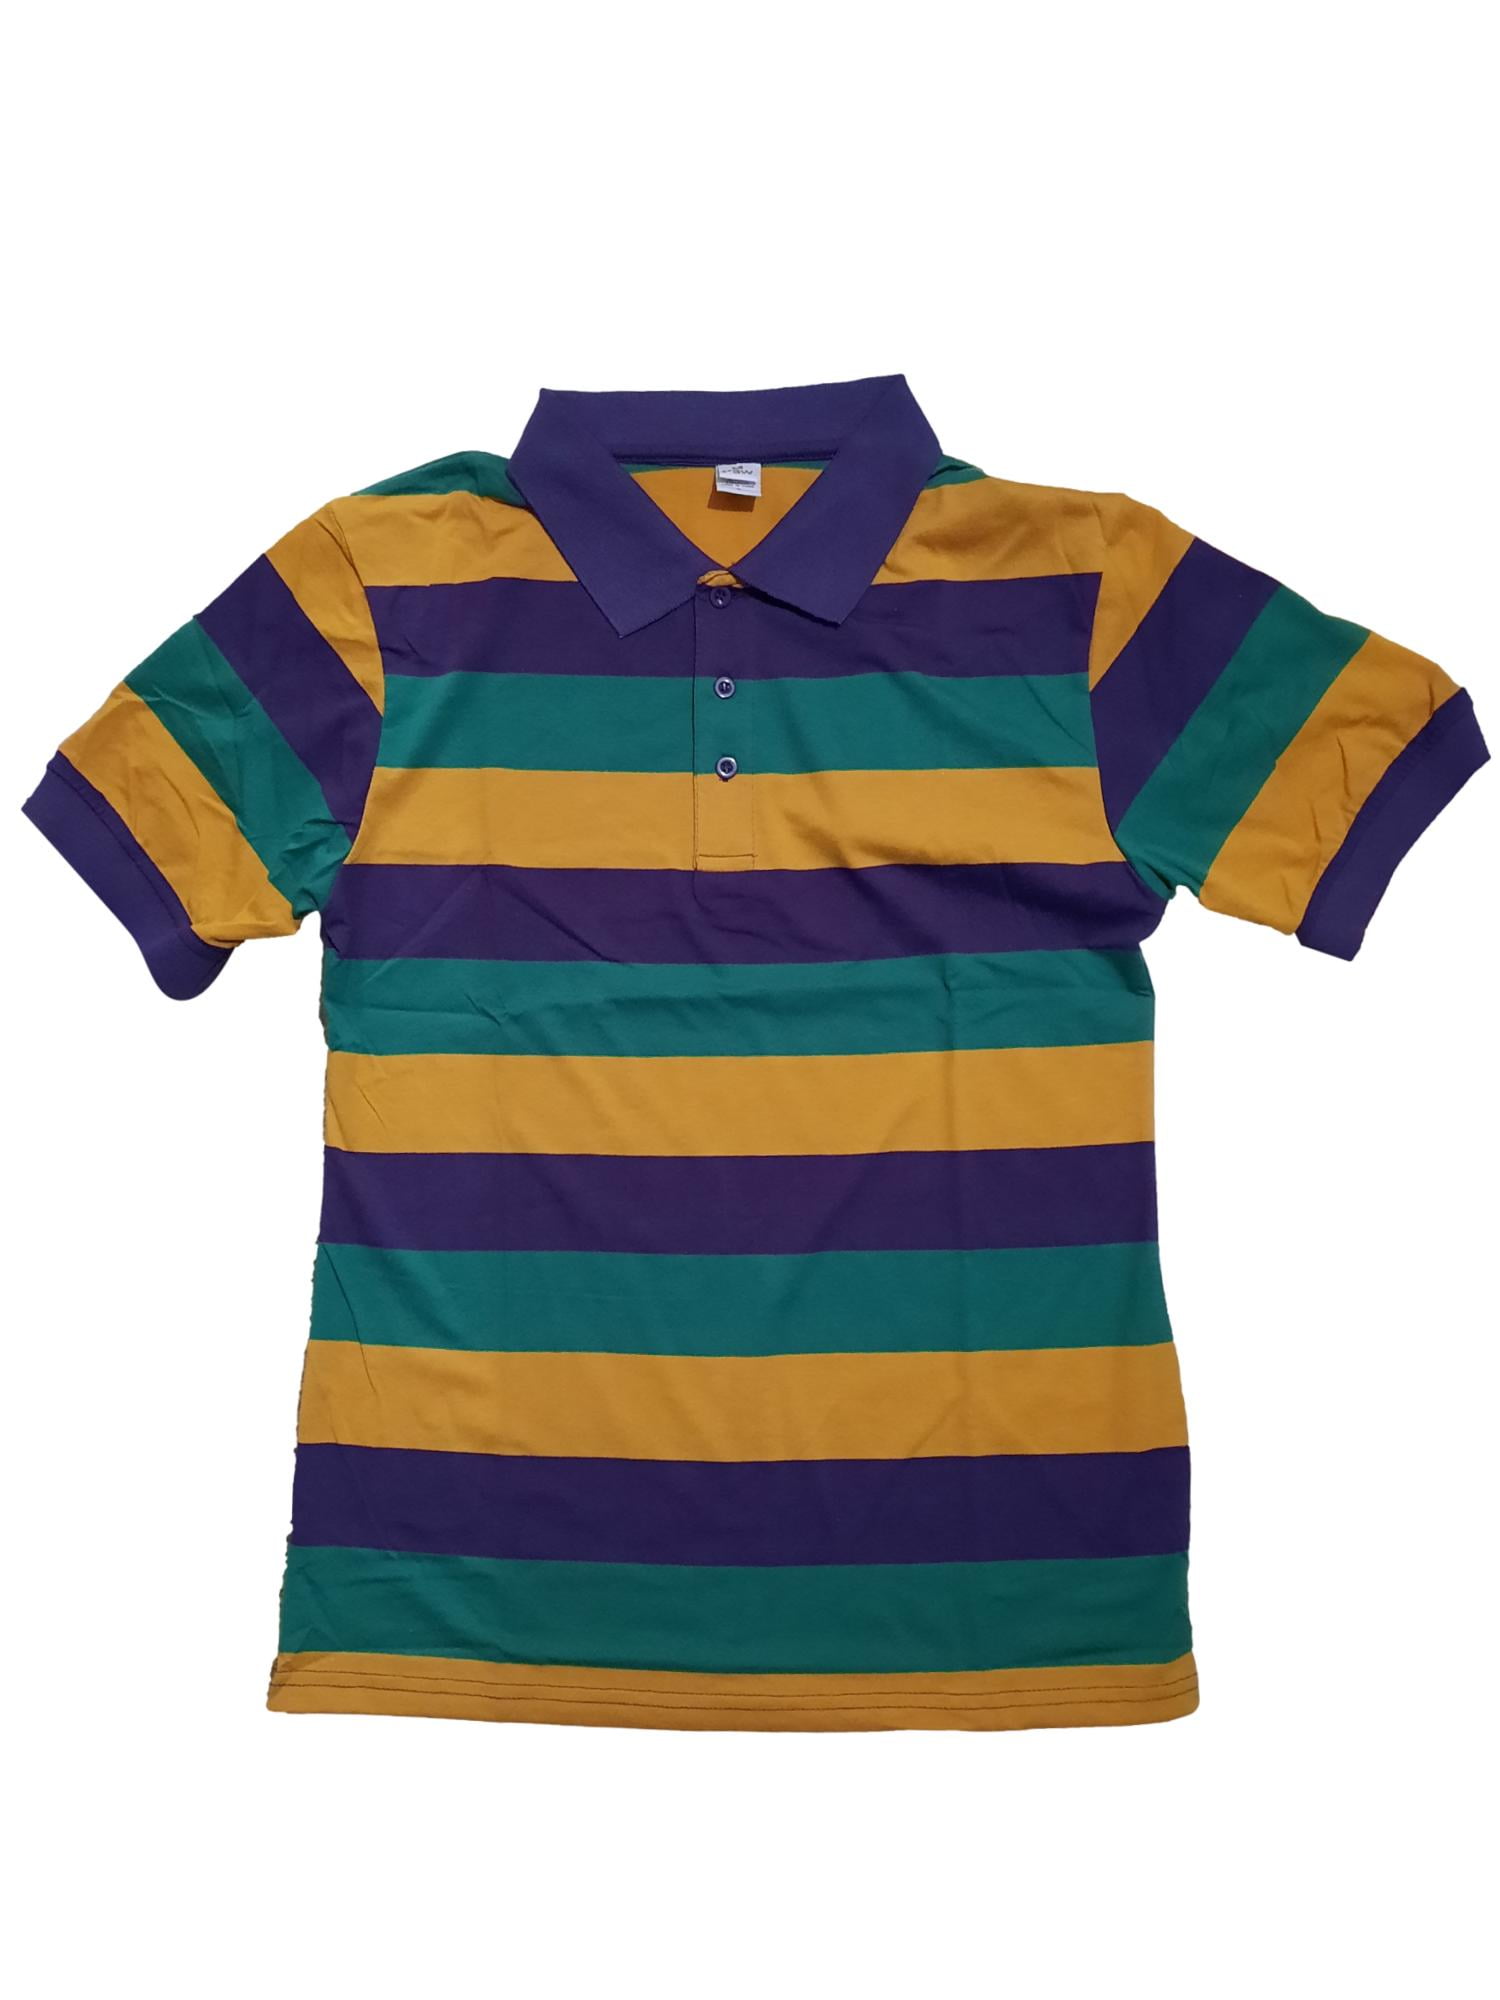 Adult Small Mardi Gras Stripe Purple Green Gold Knit SS Shirt - Walmart.com